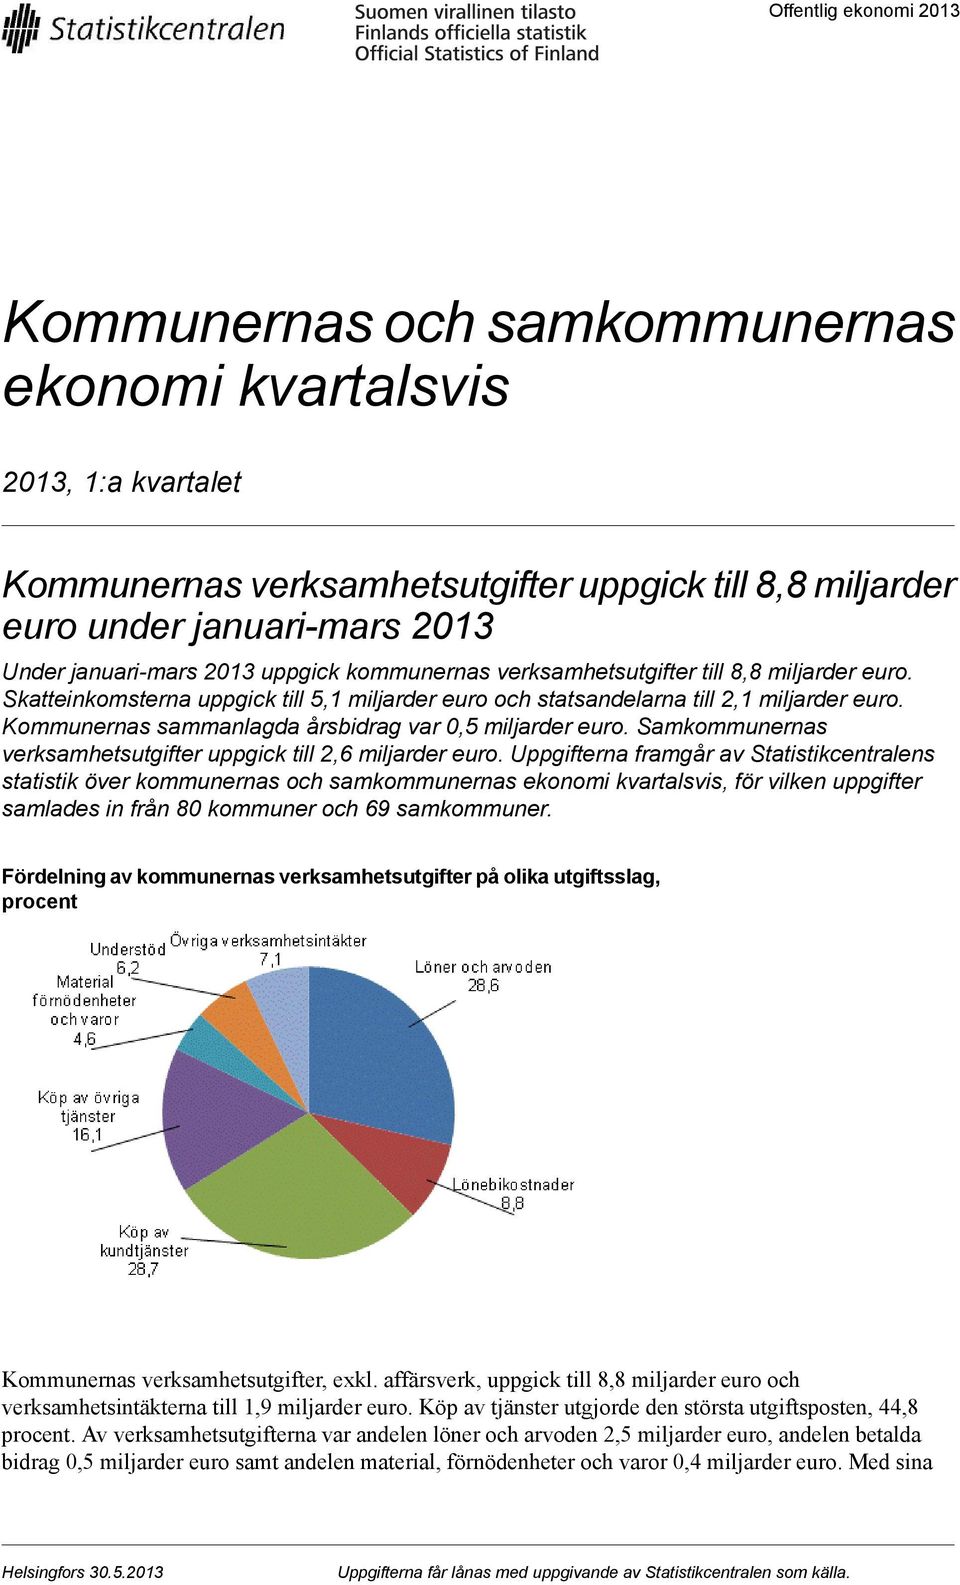 Kommunernas sammanlagda årsbidrag var 0,5 miljarder euro. Samkommunernas verksamhetsutgifter uppgick till 2,6 miljarder euro.